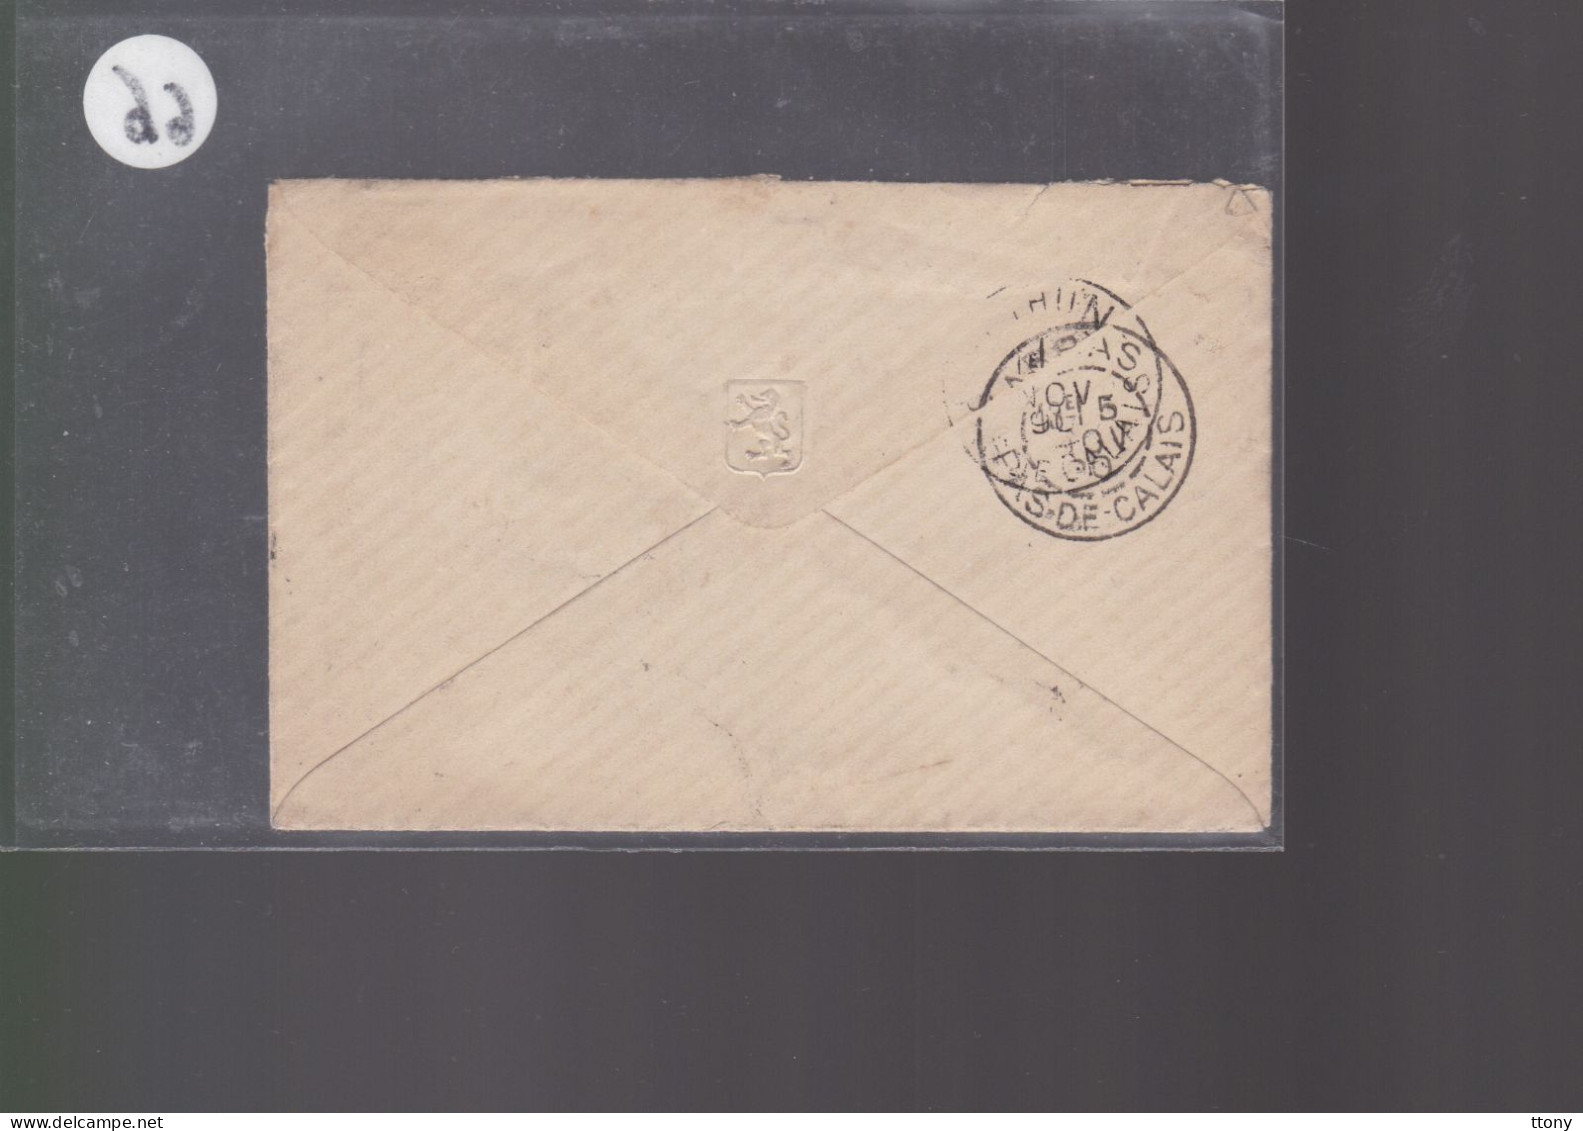 Un Timbre  15 C Type Sage   Sur Enveloppe  ( S.C )  1890 Destination  Béthune  Cachet OR   RURAL - 1877-1920: Semi Modern Period